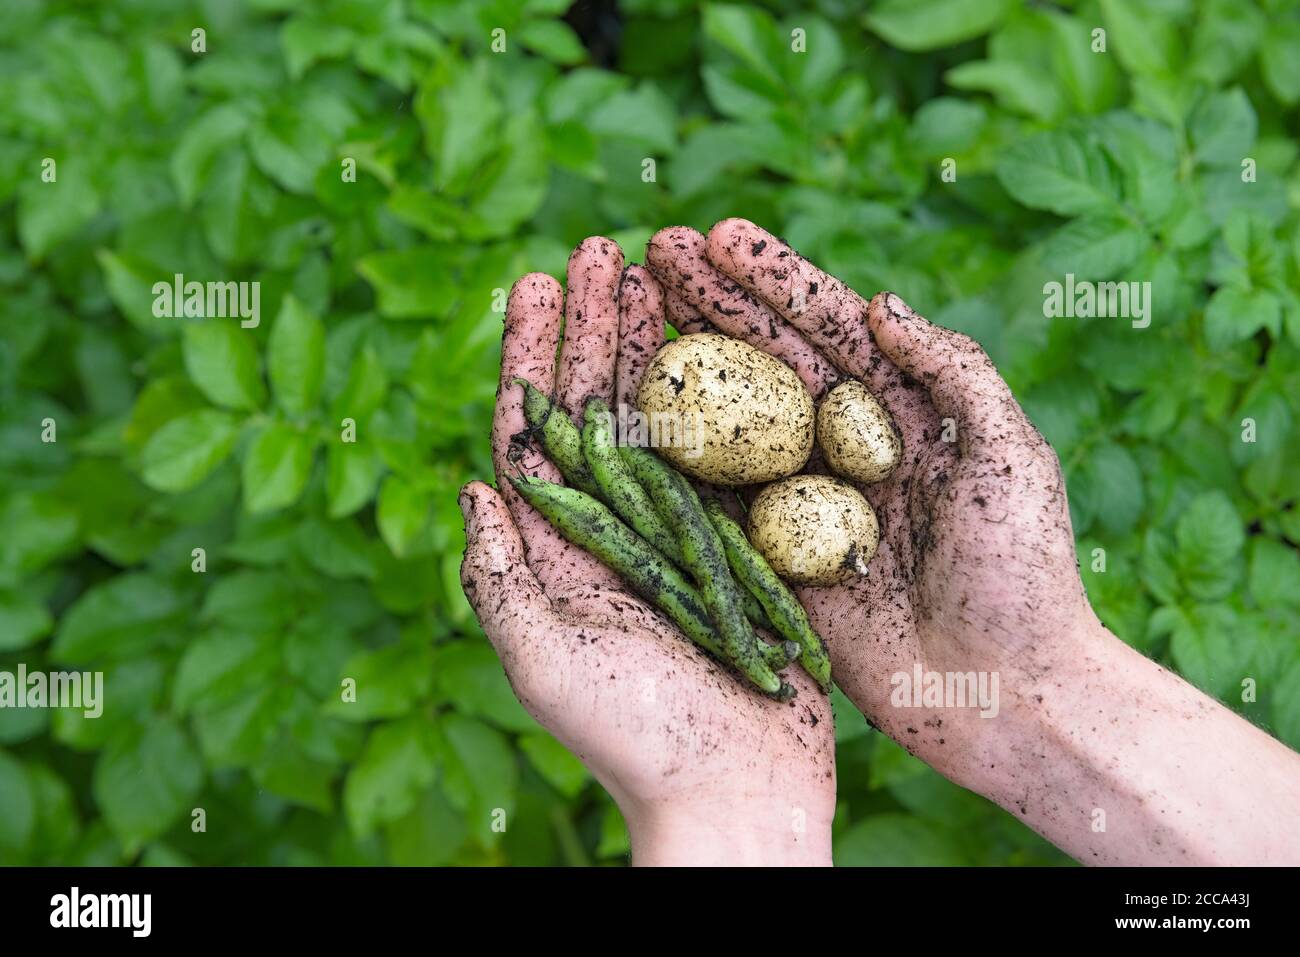 Fond vert vif et verdoyant derrière les jeunes mains qui contiennent des pommes de terre blanches boueuses et des haricots à longue gousse géants sains d'exposition. Une alimentation naturelle saine. Banque D'Images